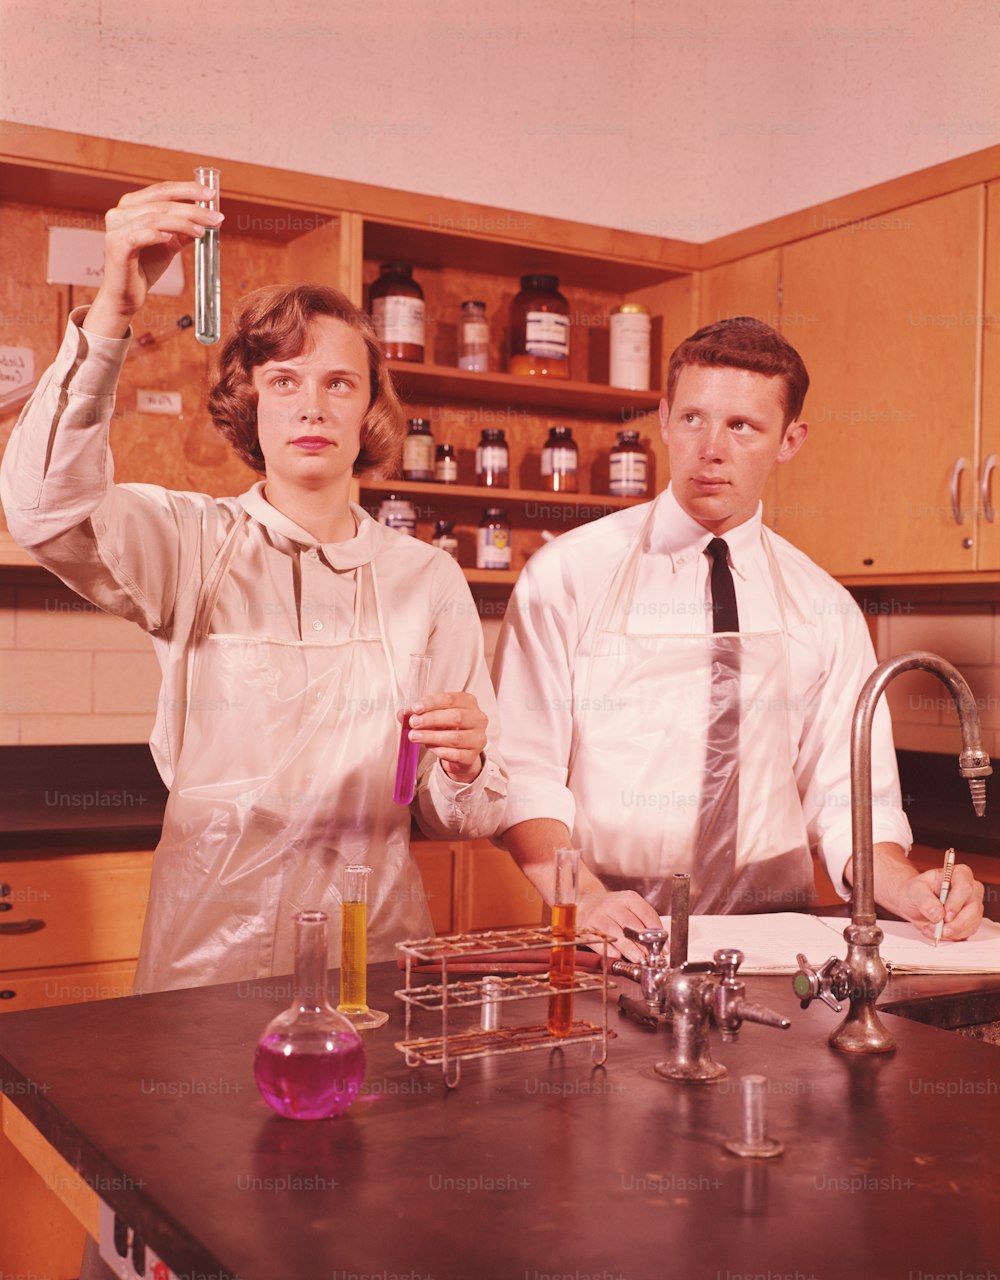 STATI UNITI - CIRCA 1960: Due studenti in un laboratorio di chimica, ragazza che tiene in provetta, ragazzo che prende appunti scientifici.